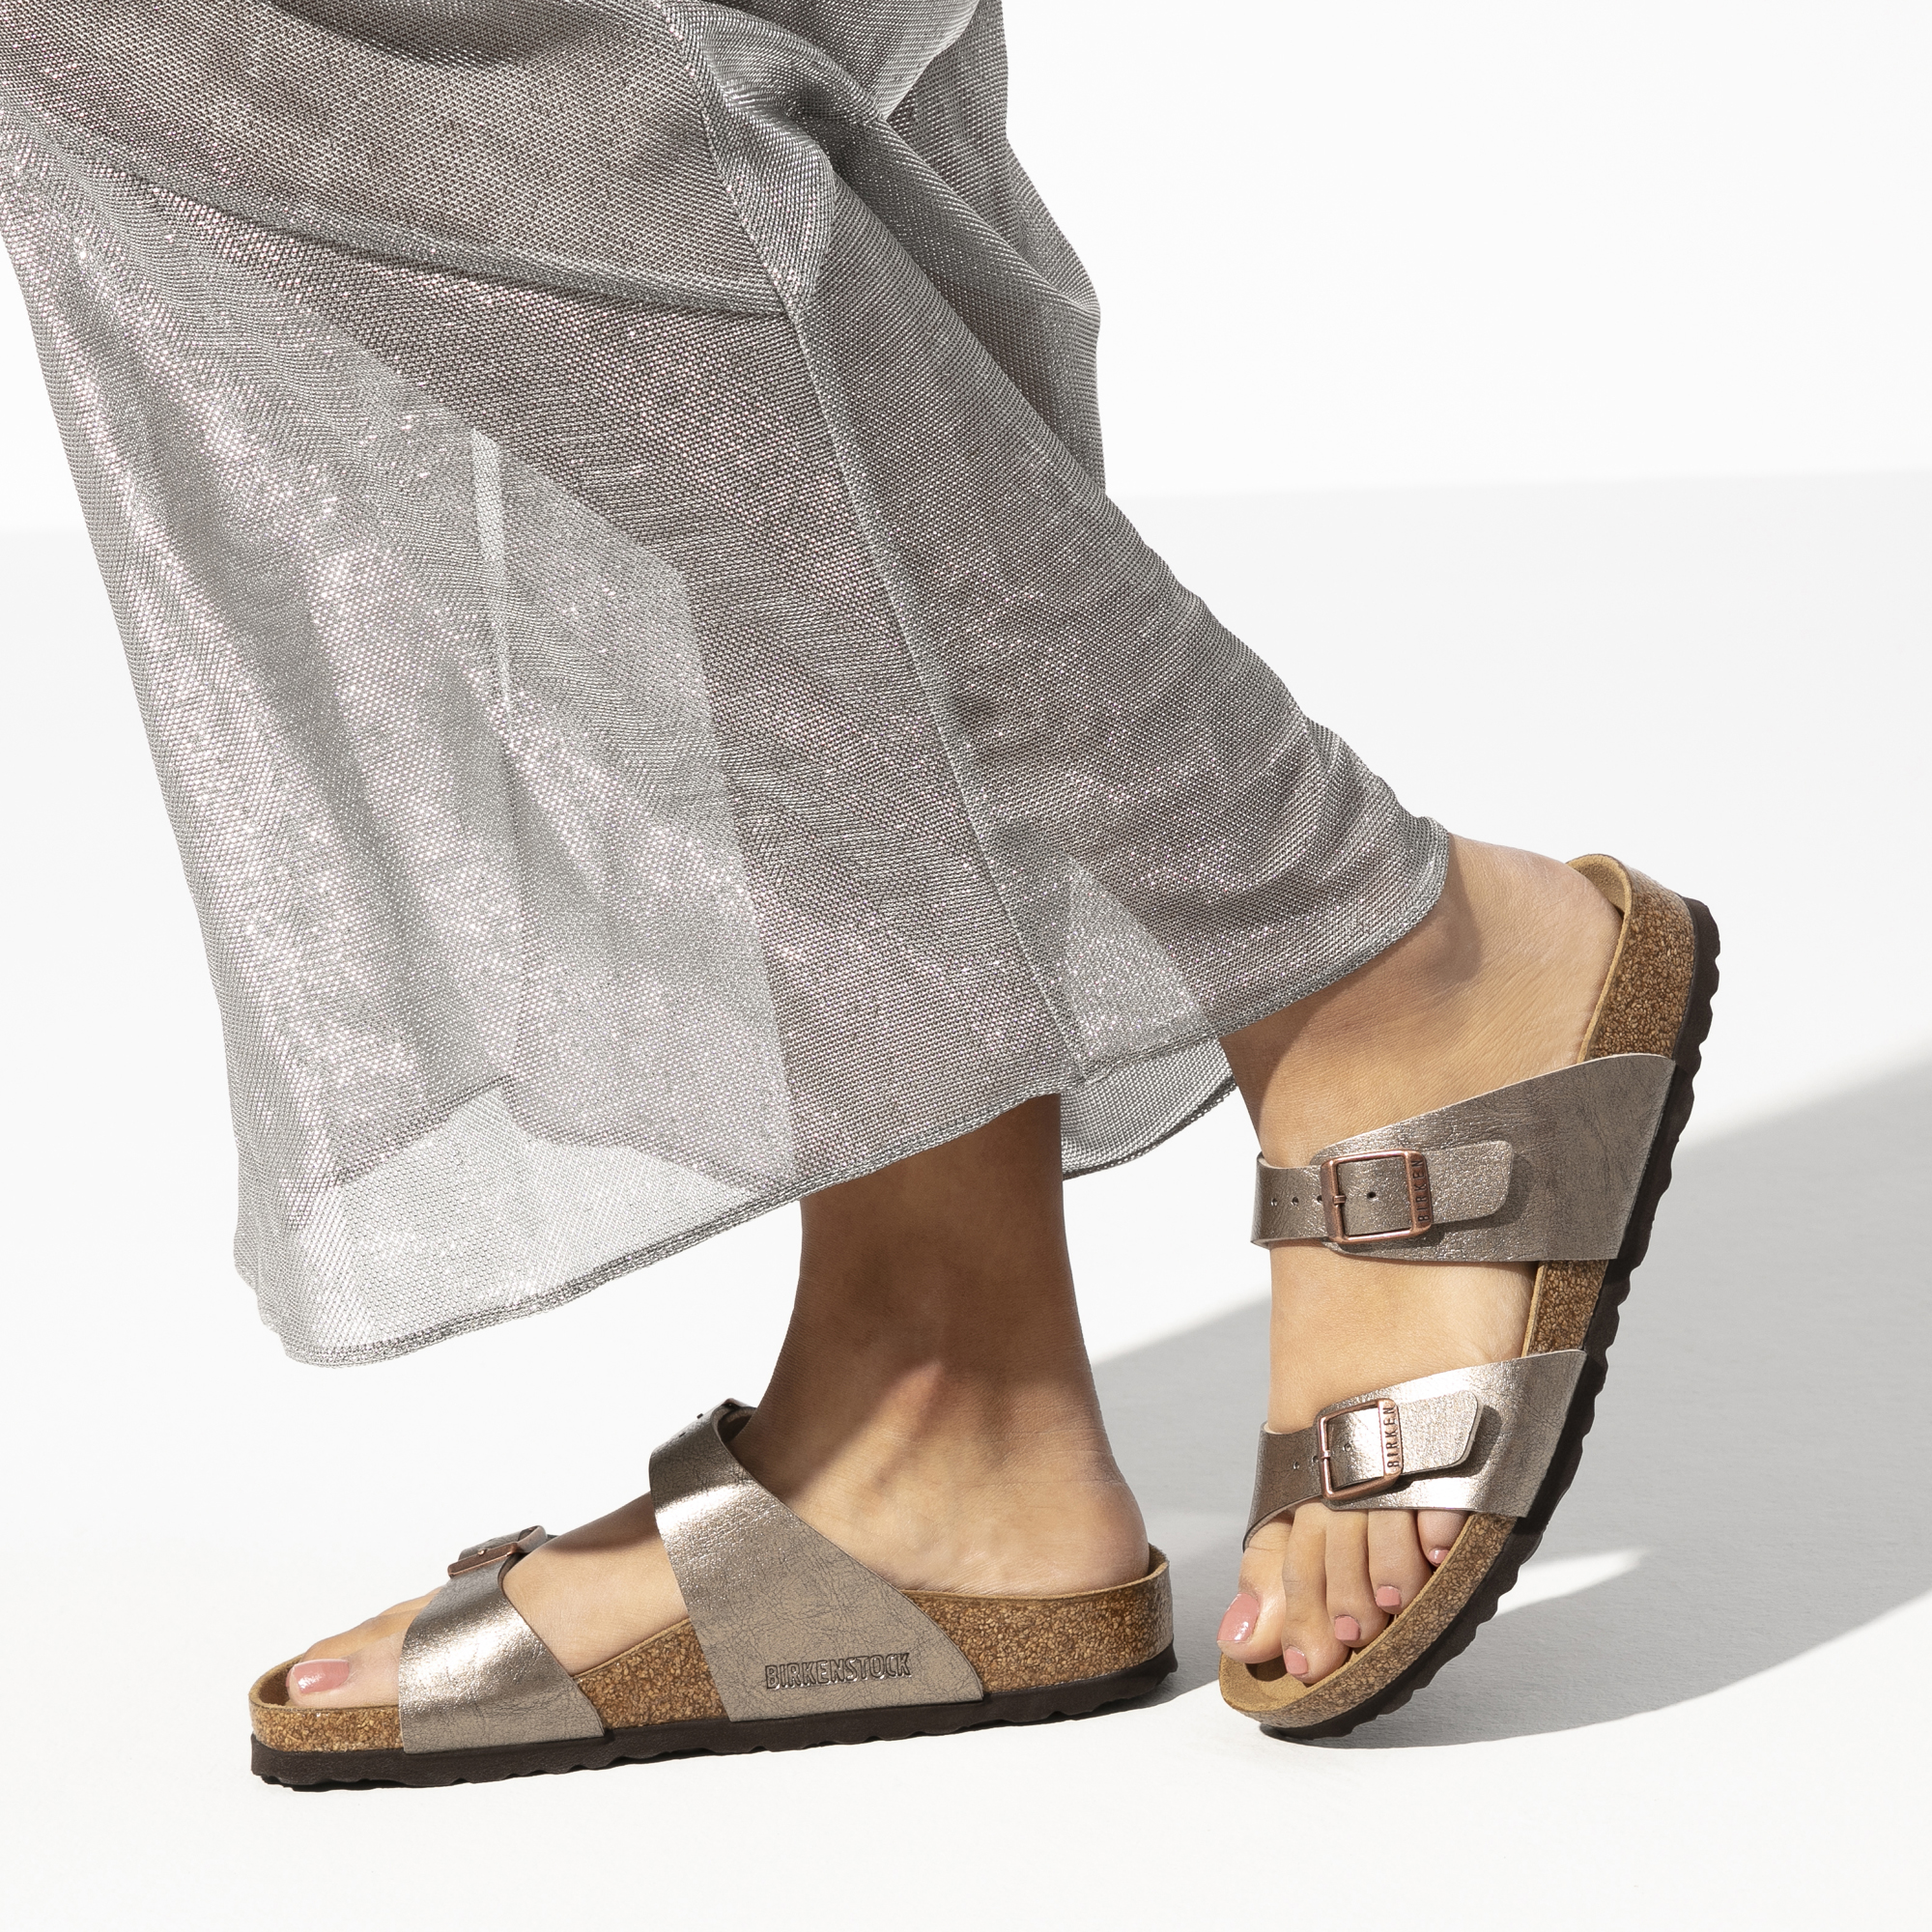 birkenstock sydney sandals